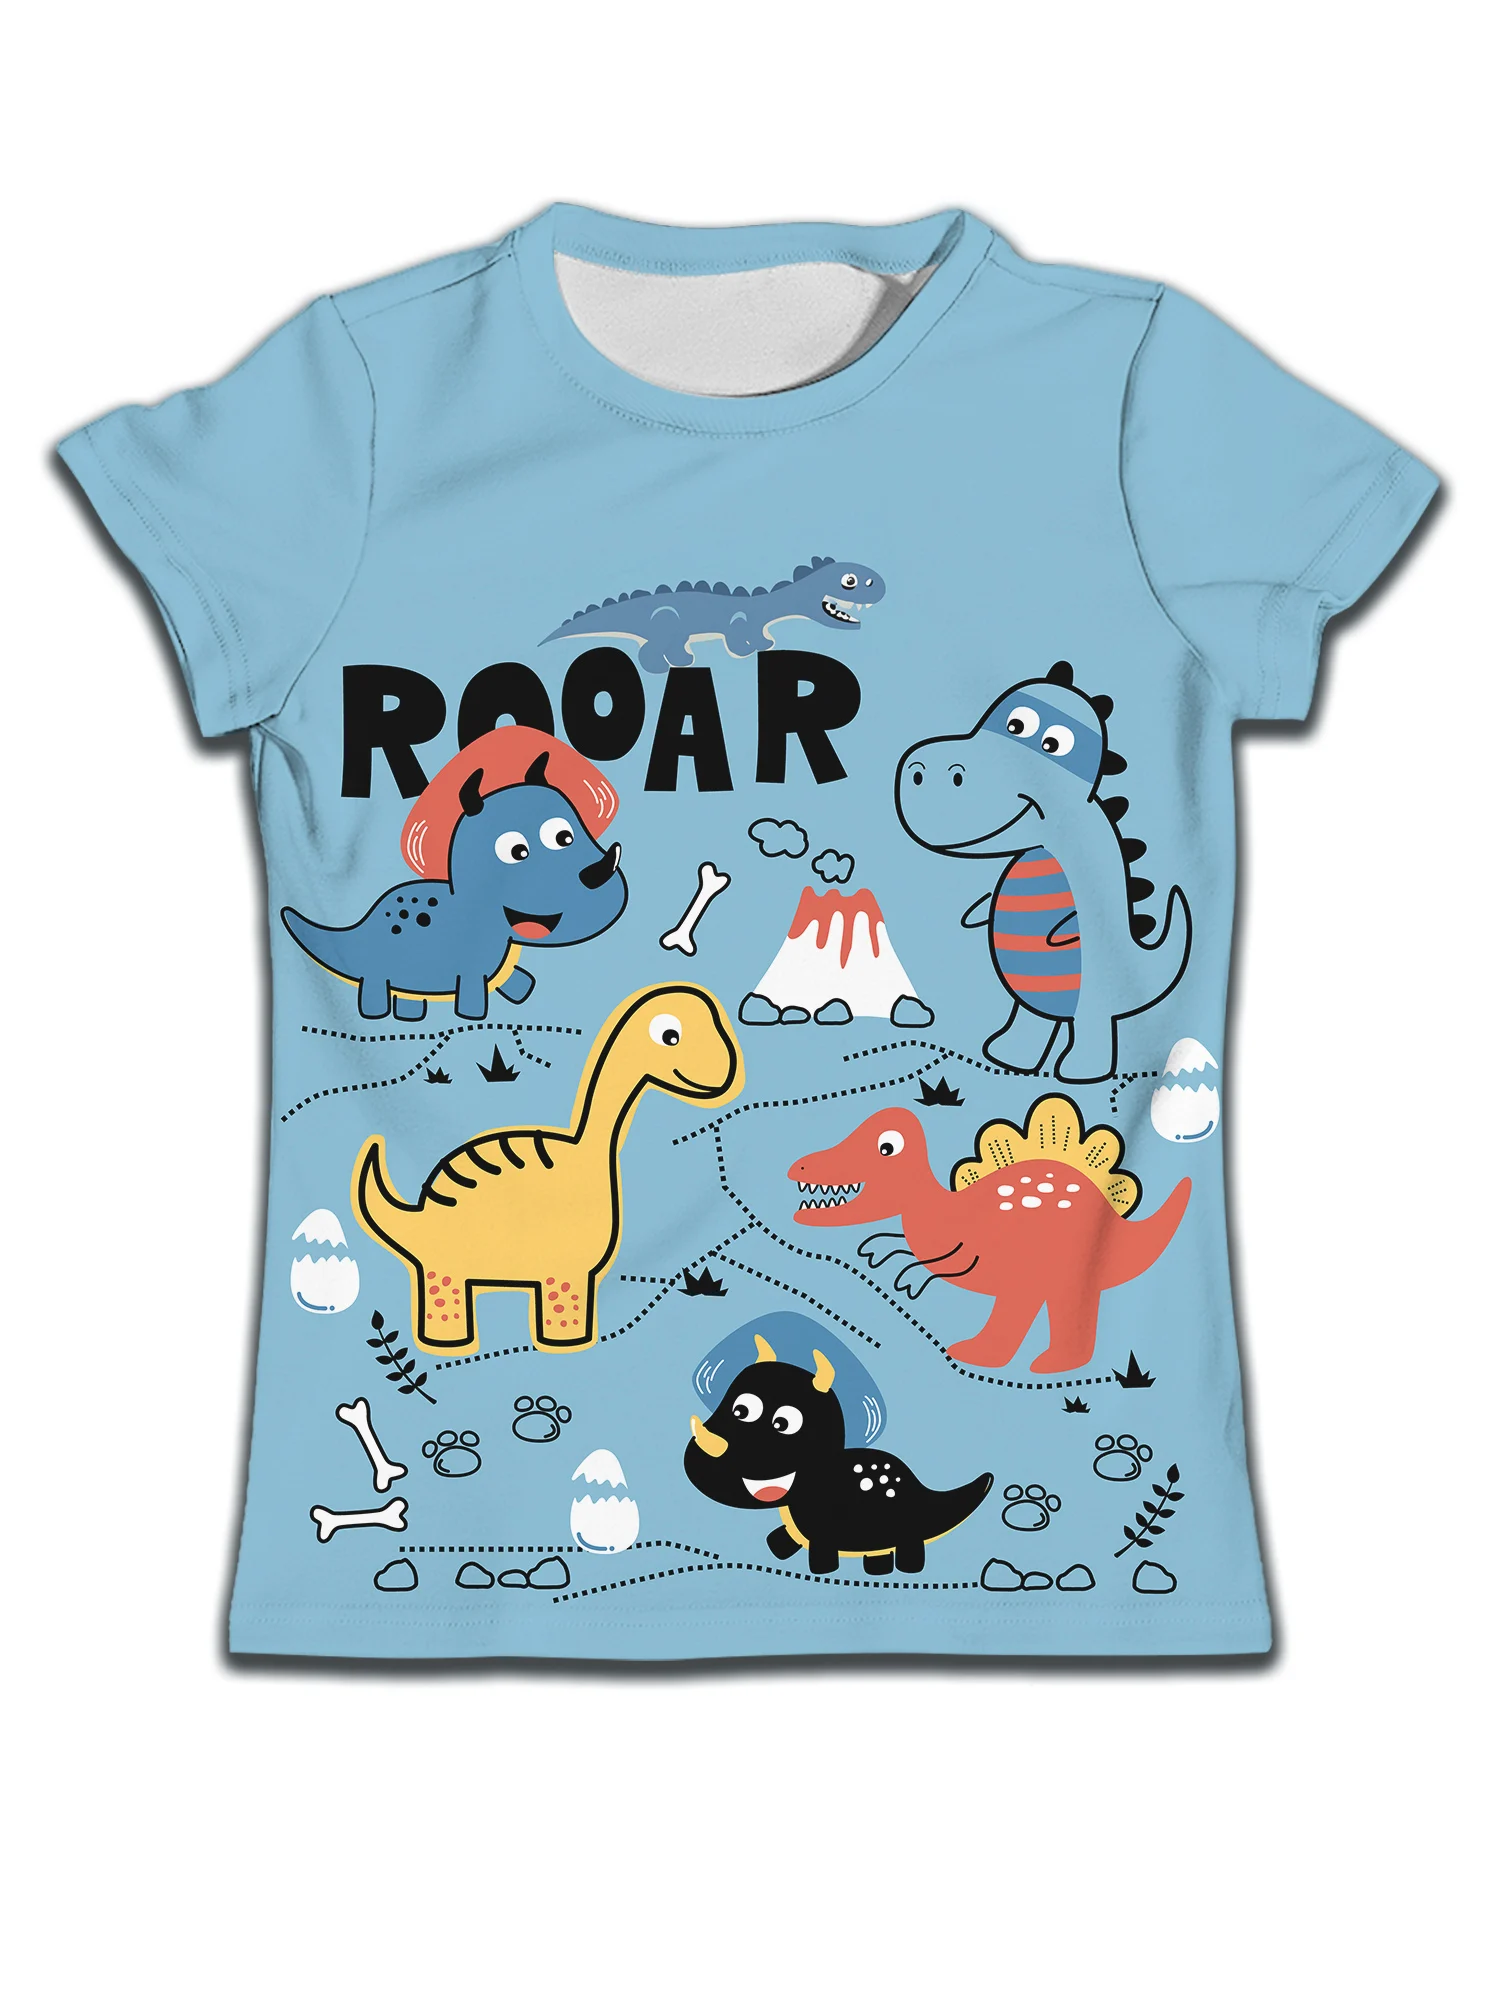 

Футболка для мальчиков и девочек 3-14 лет, одежда с рисунком динозавра, рая футболка, детский топ, голубой мультяшный рисунок с коротким рукавом для девочек